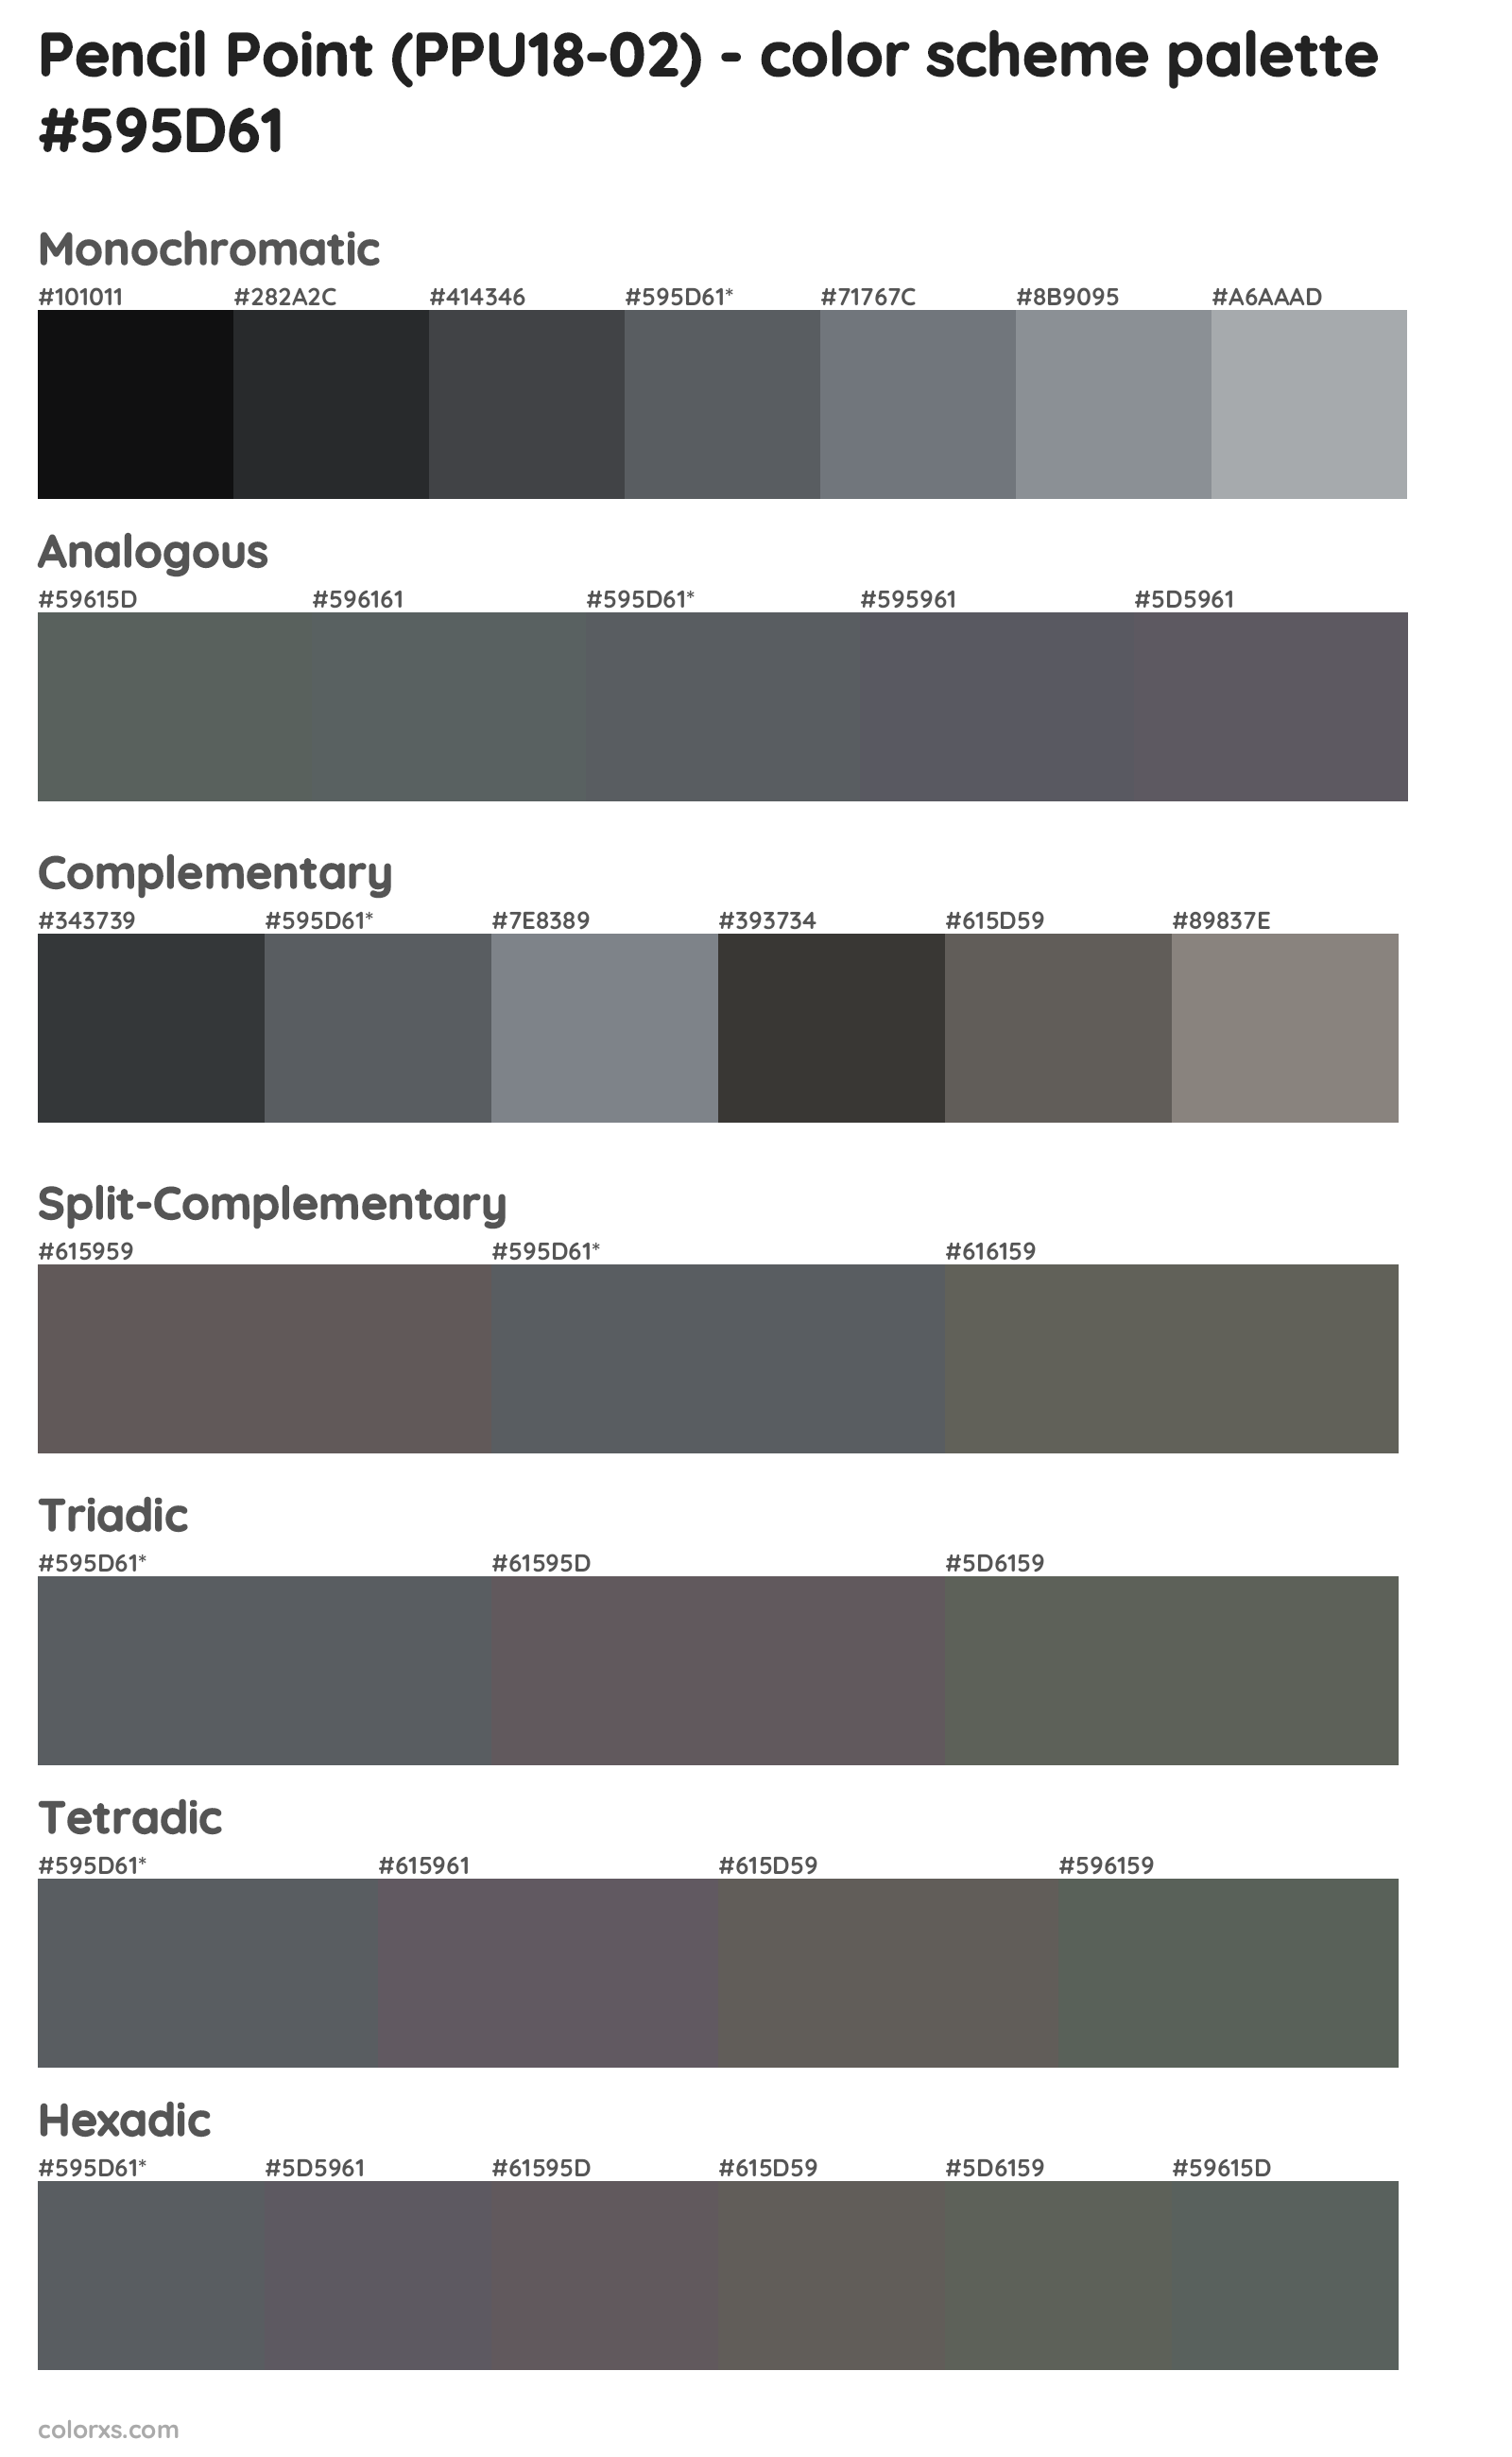 Pencil Point (PPU18-02) Color Scheme Palettes